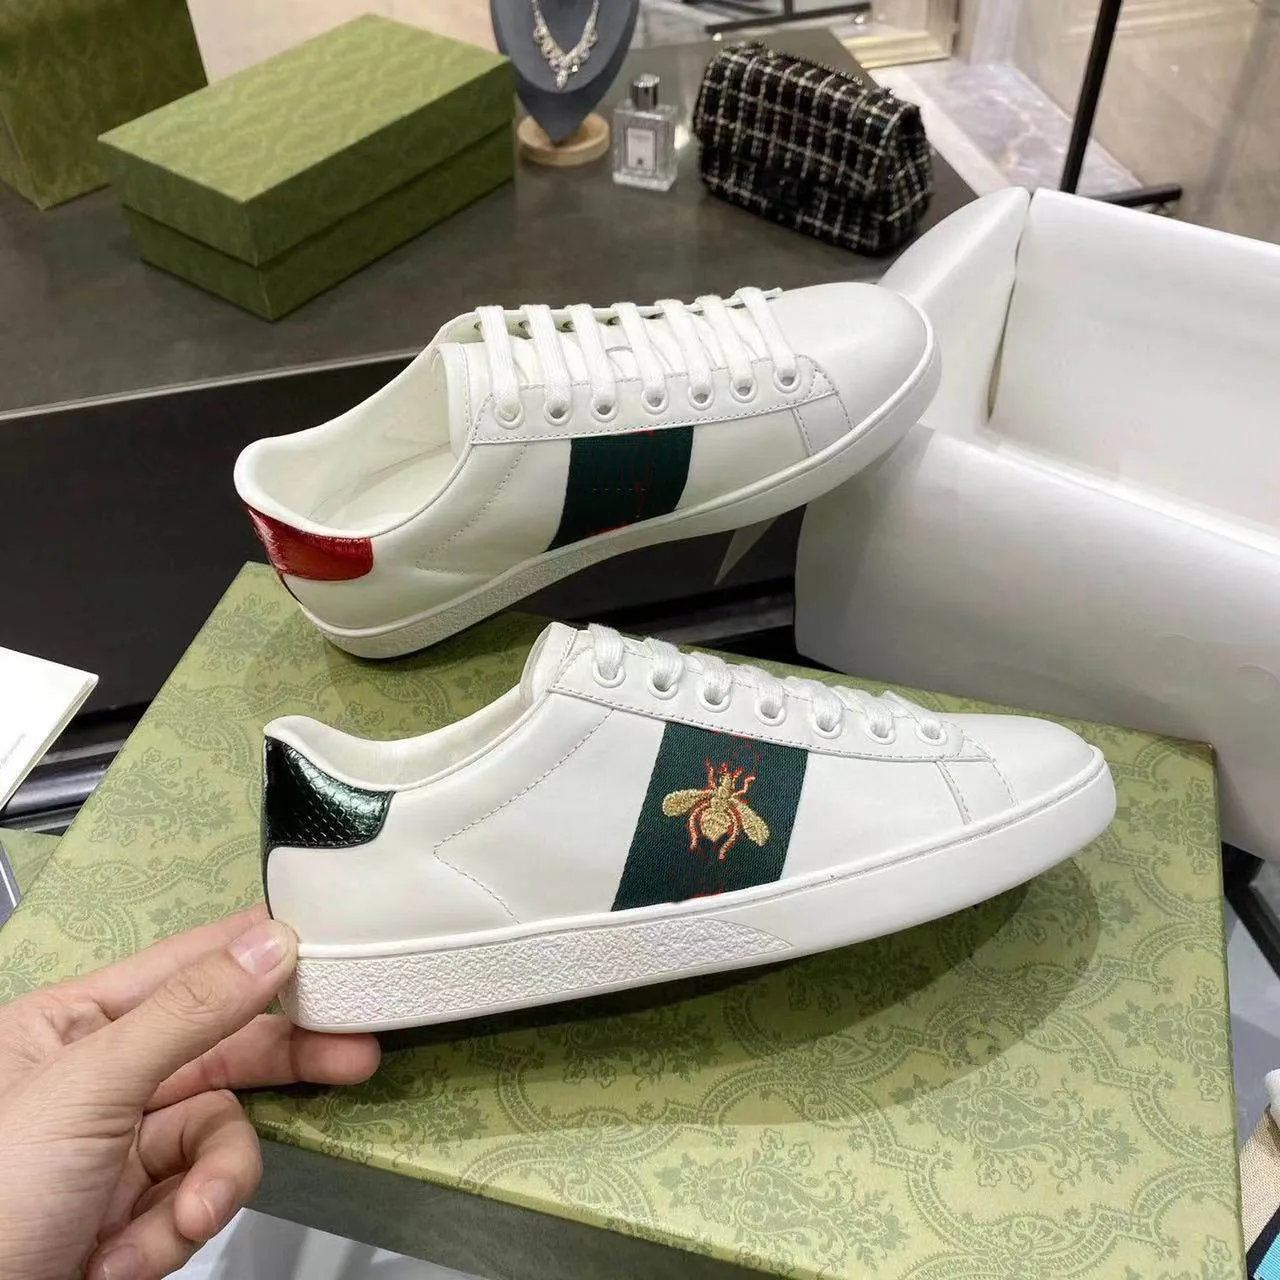 أحذية رياضية مطرزة باللون الأبيض على شكل نمر نحلة مع خطوط حمراء وخضراء من الجلد الطبيعي منصة أحذية رياضية للرجال والنساء غير رسمية مقاس كبير 48